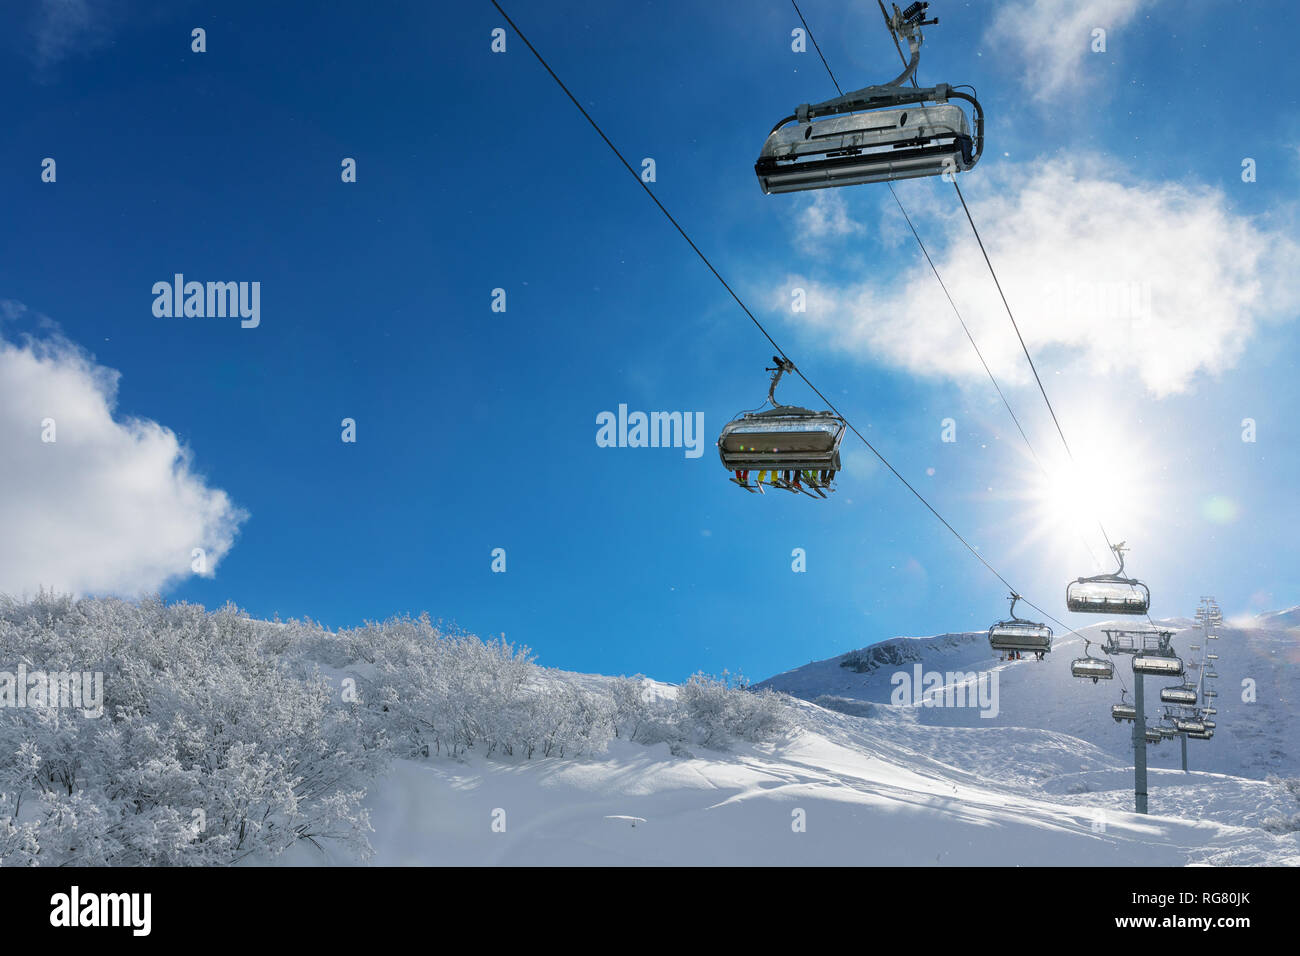 Les skieurs en un téléski de montagnes de neige contre le bleu ciel ensoleillé Banque D'Images